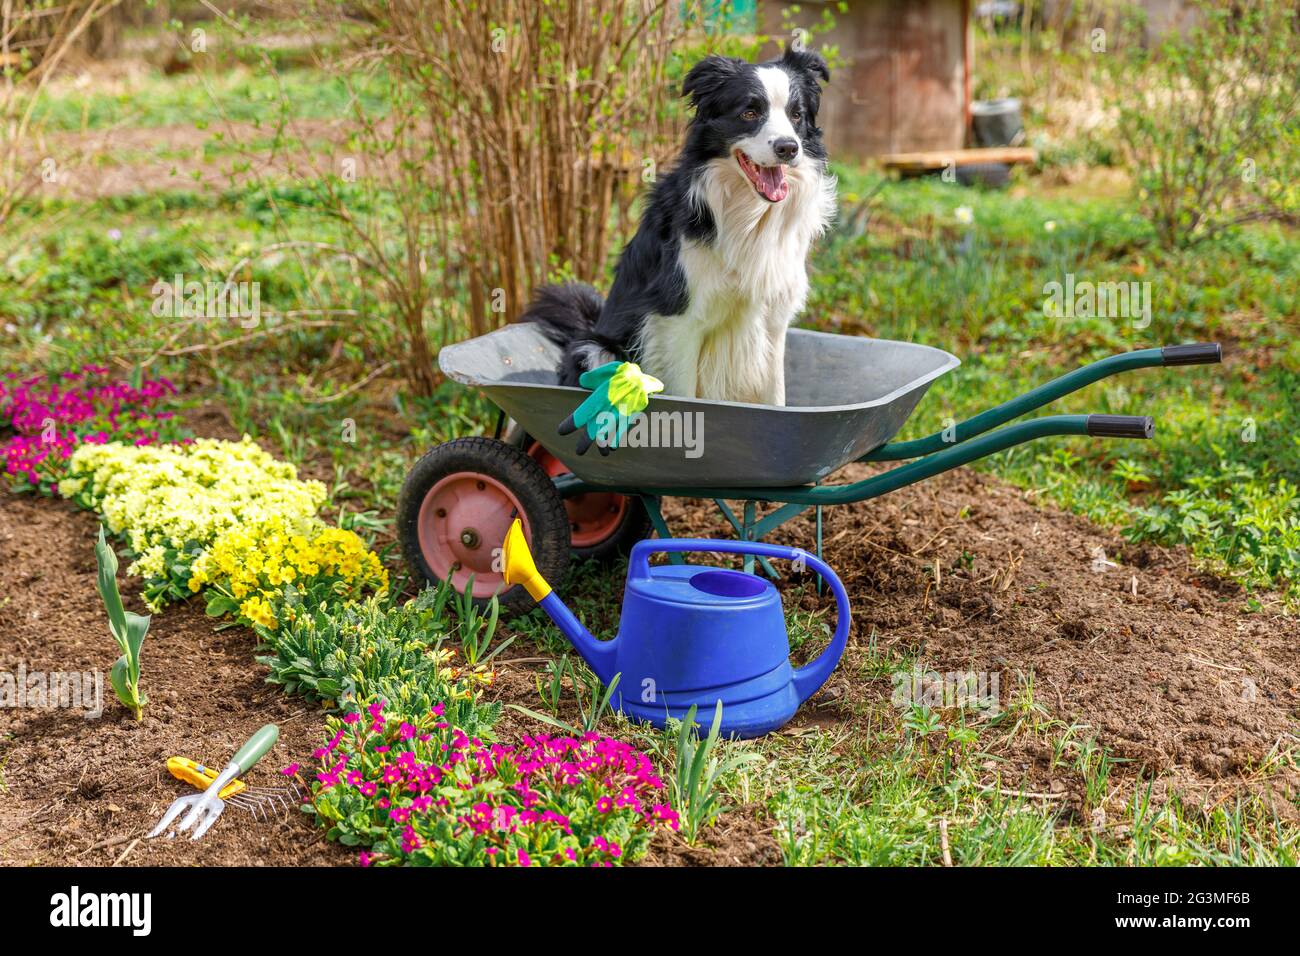 Outdoor-Porträt von niedlichen Hund Grenze Collie sitzt in Schubkarre Garten Wagen im Garten Hintergrund. Lustige Welpen Hund als Gärtner bereit, Samen zu Pflanzen Stockfoto